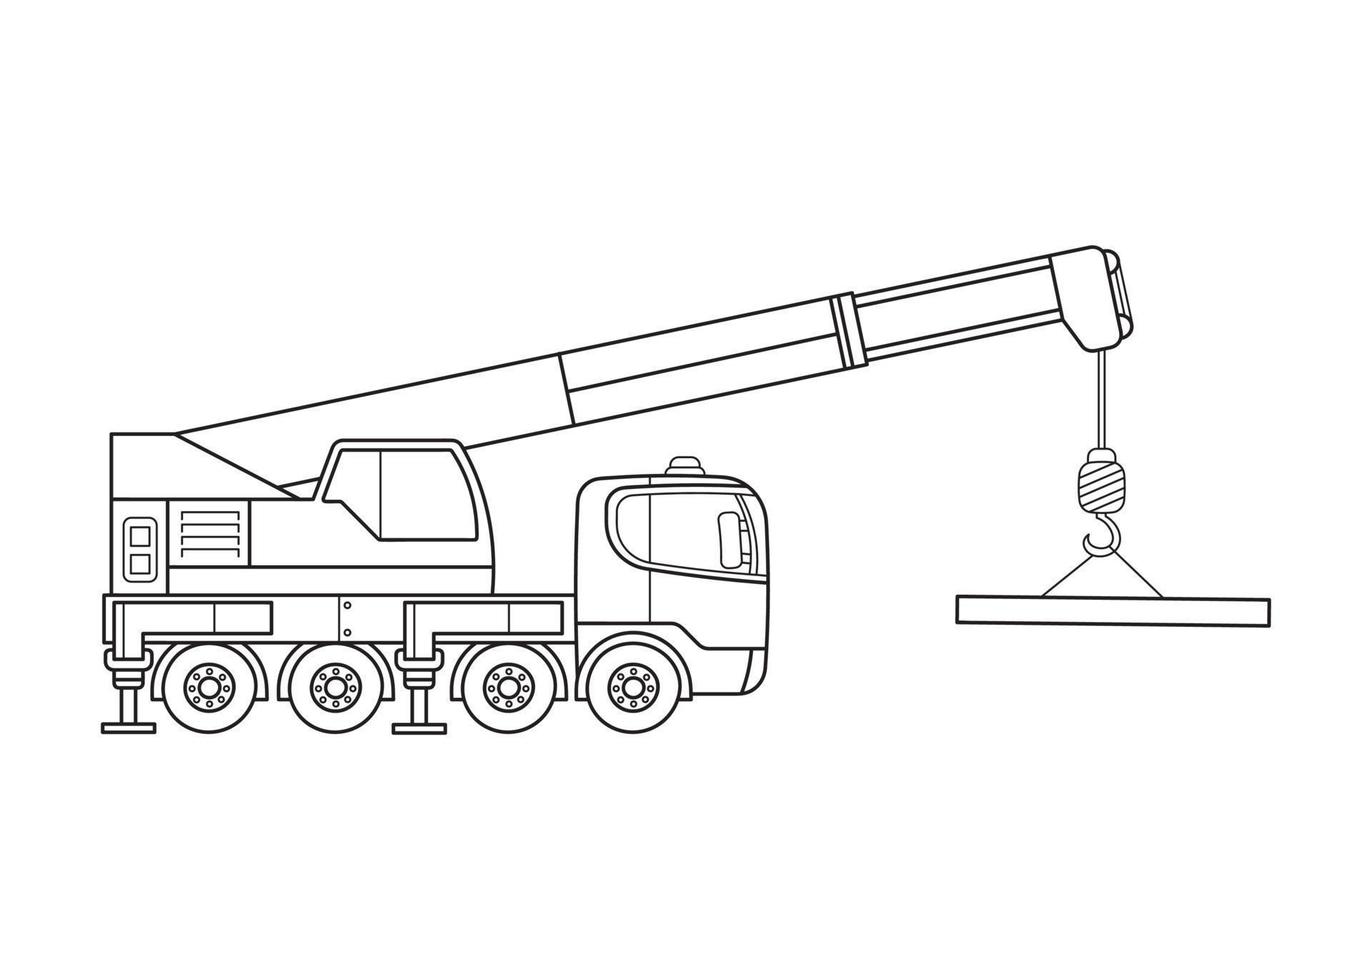 Mobile crane sketch icon. | Stock vector | Colourbox